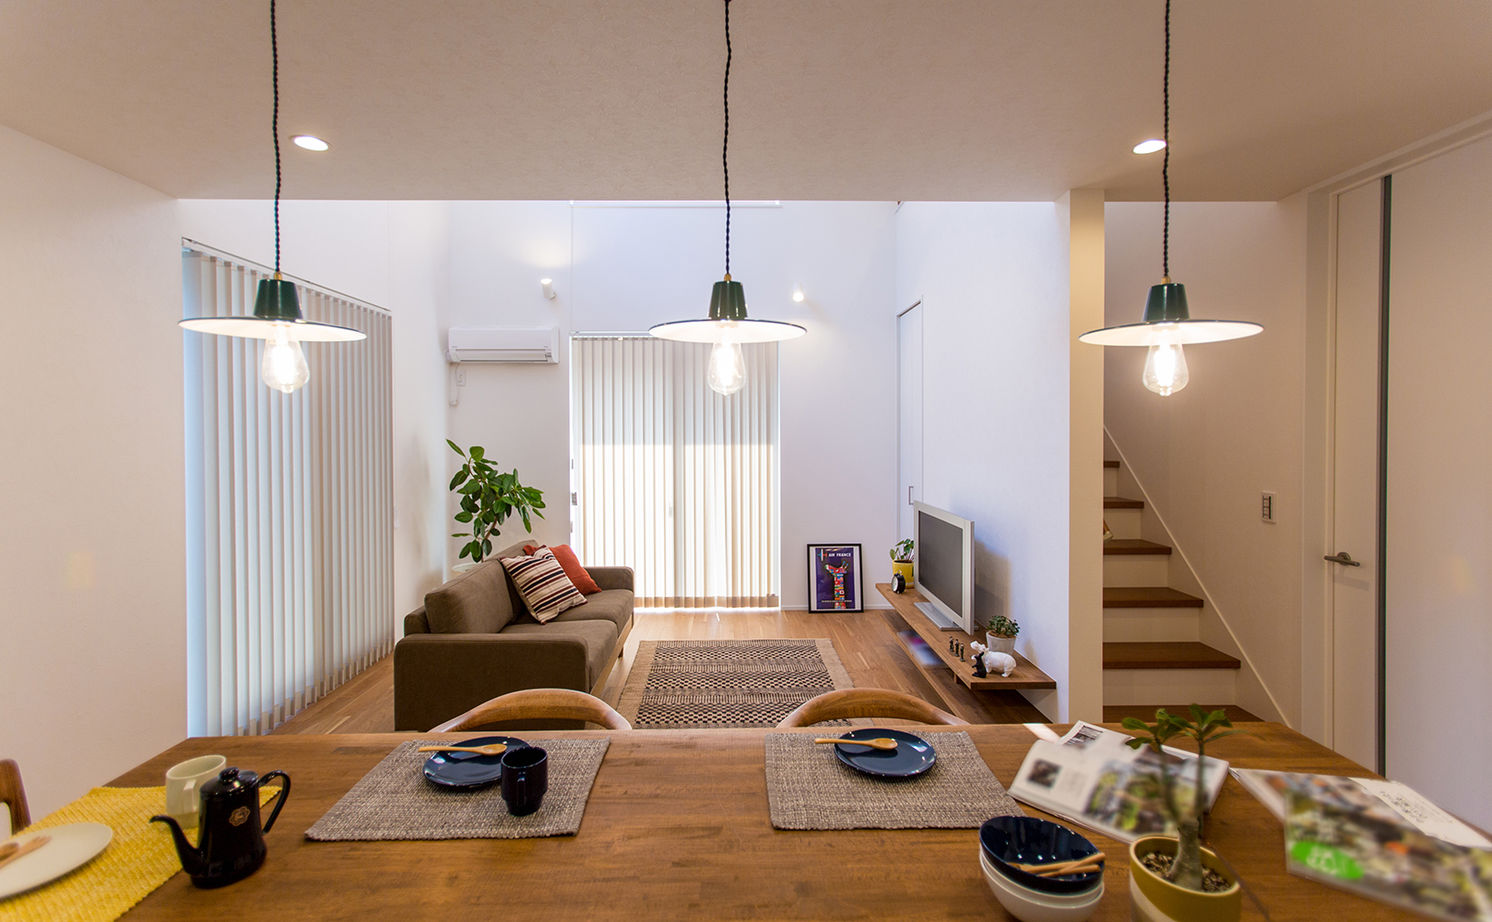 Suumo 緑が映えるおしゃれな外観 カフェ風キッチンと吹抜けリビングの家 シンプルハウス の建築実例詳細 注文住宅